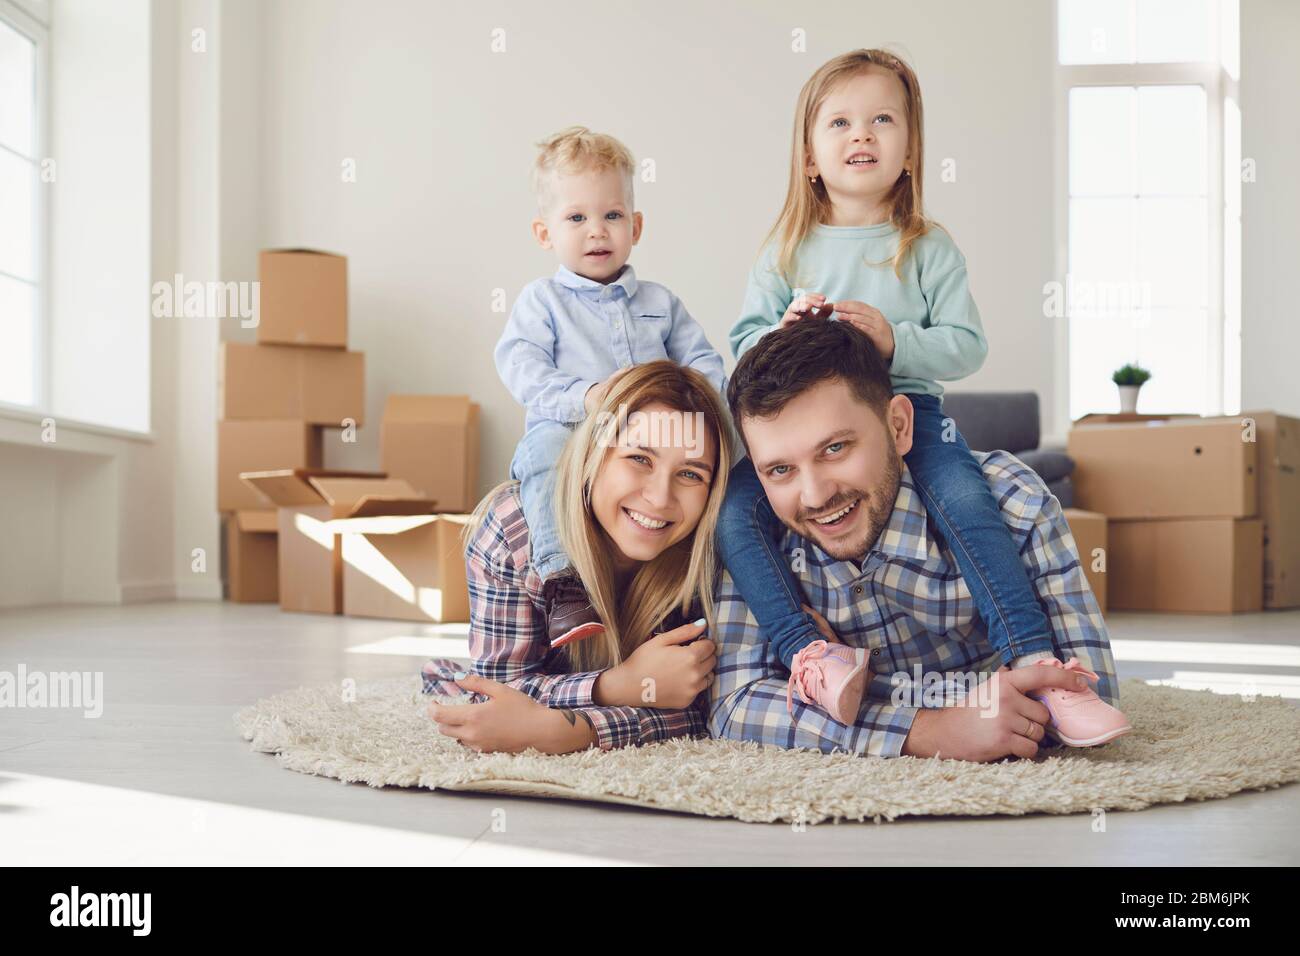 Glückliche Familie lächelnd an, ein neues Haus zu bewegen. Stockfoto